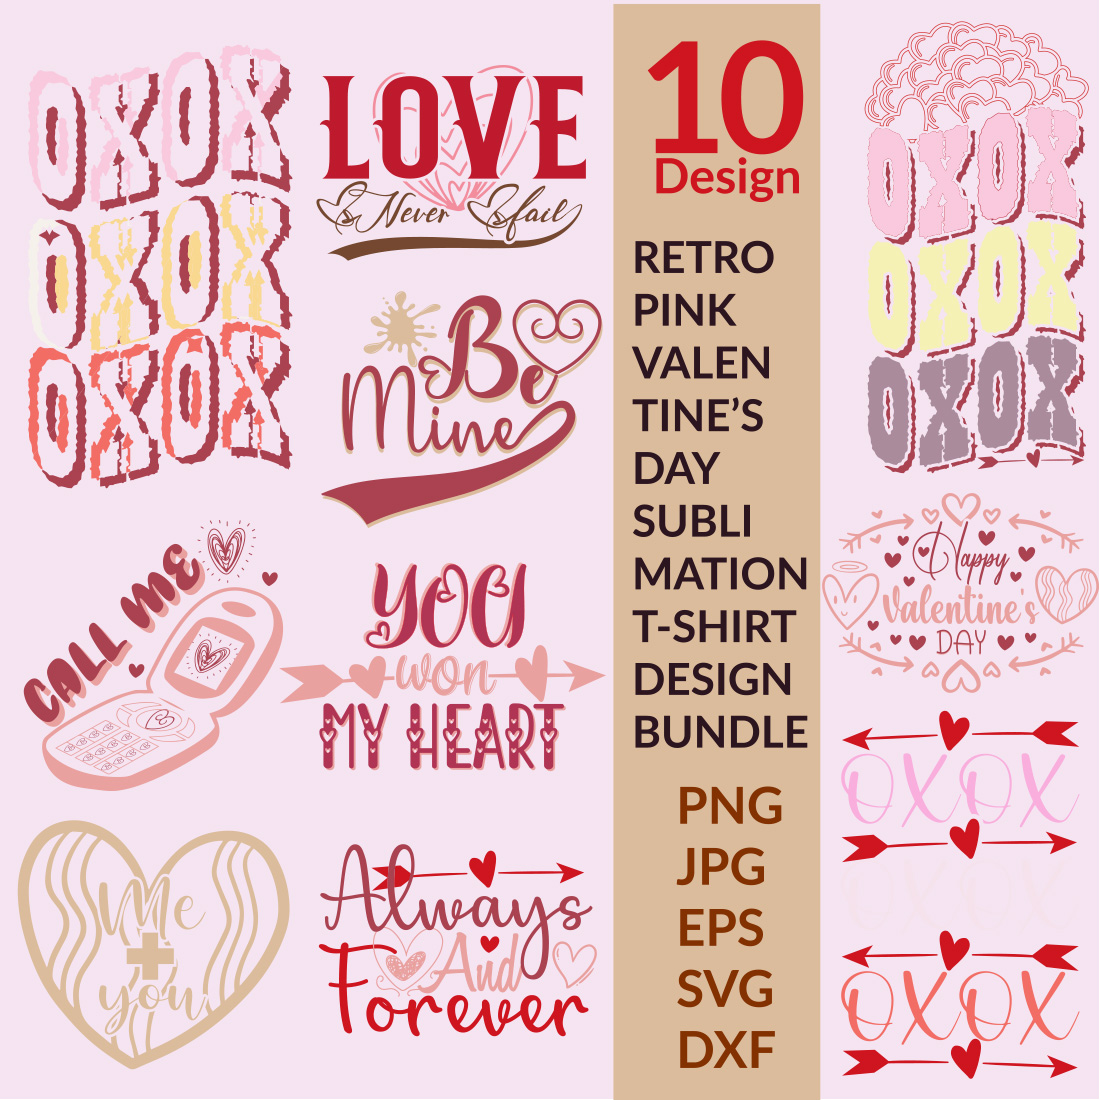 10 Retro Valentine's Day Sublimation T-Shirt Design Bundle 02 main cover.